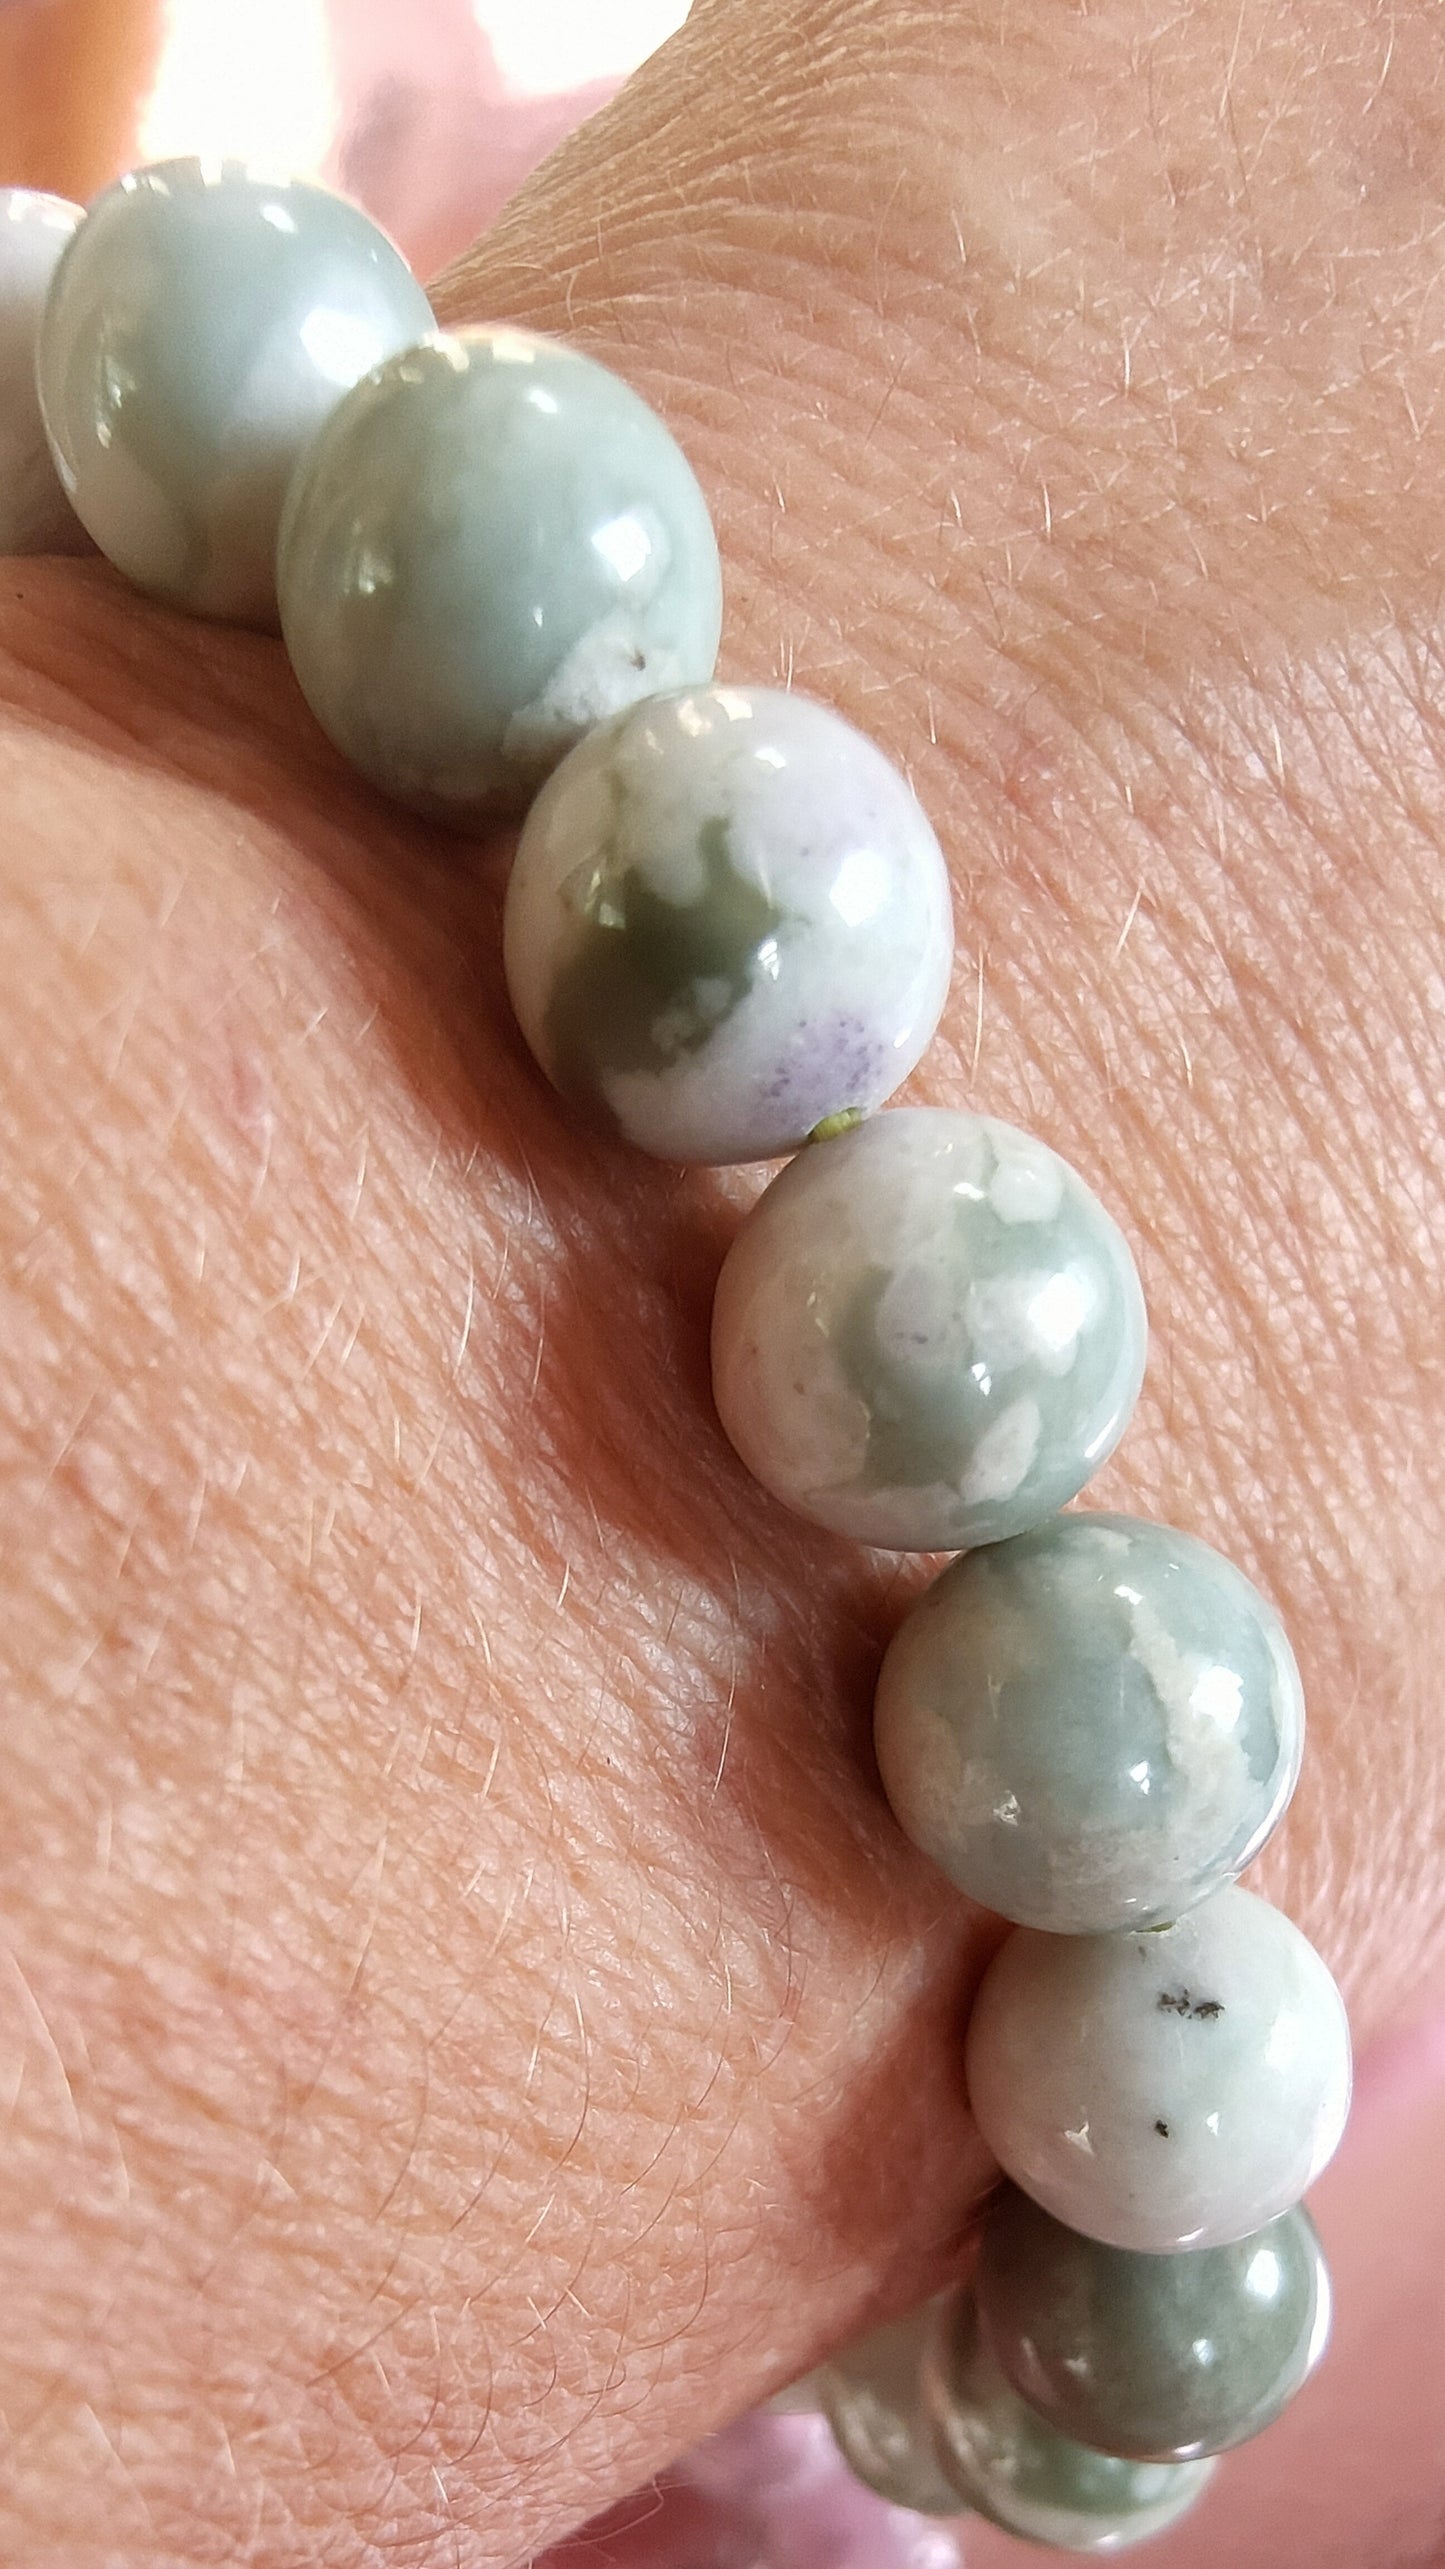 Bracelet en Jade de Hetian - perles de 10 mm - qualité 💎💎💎💎